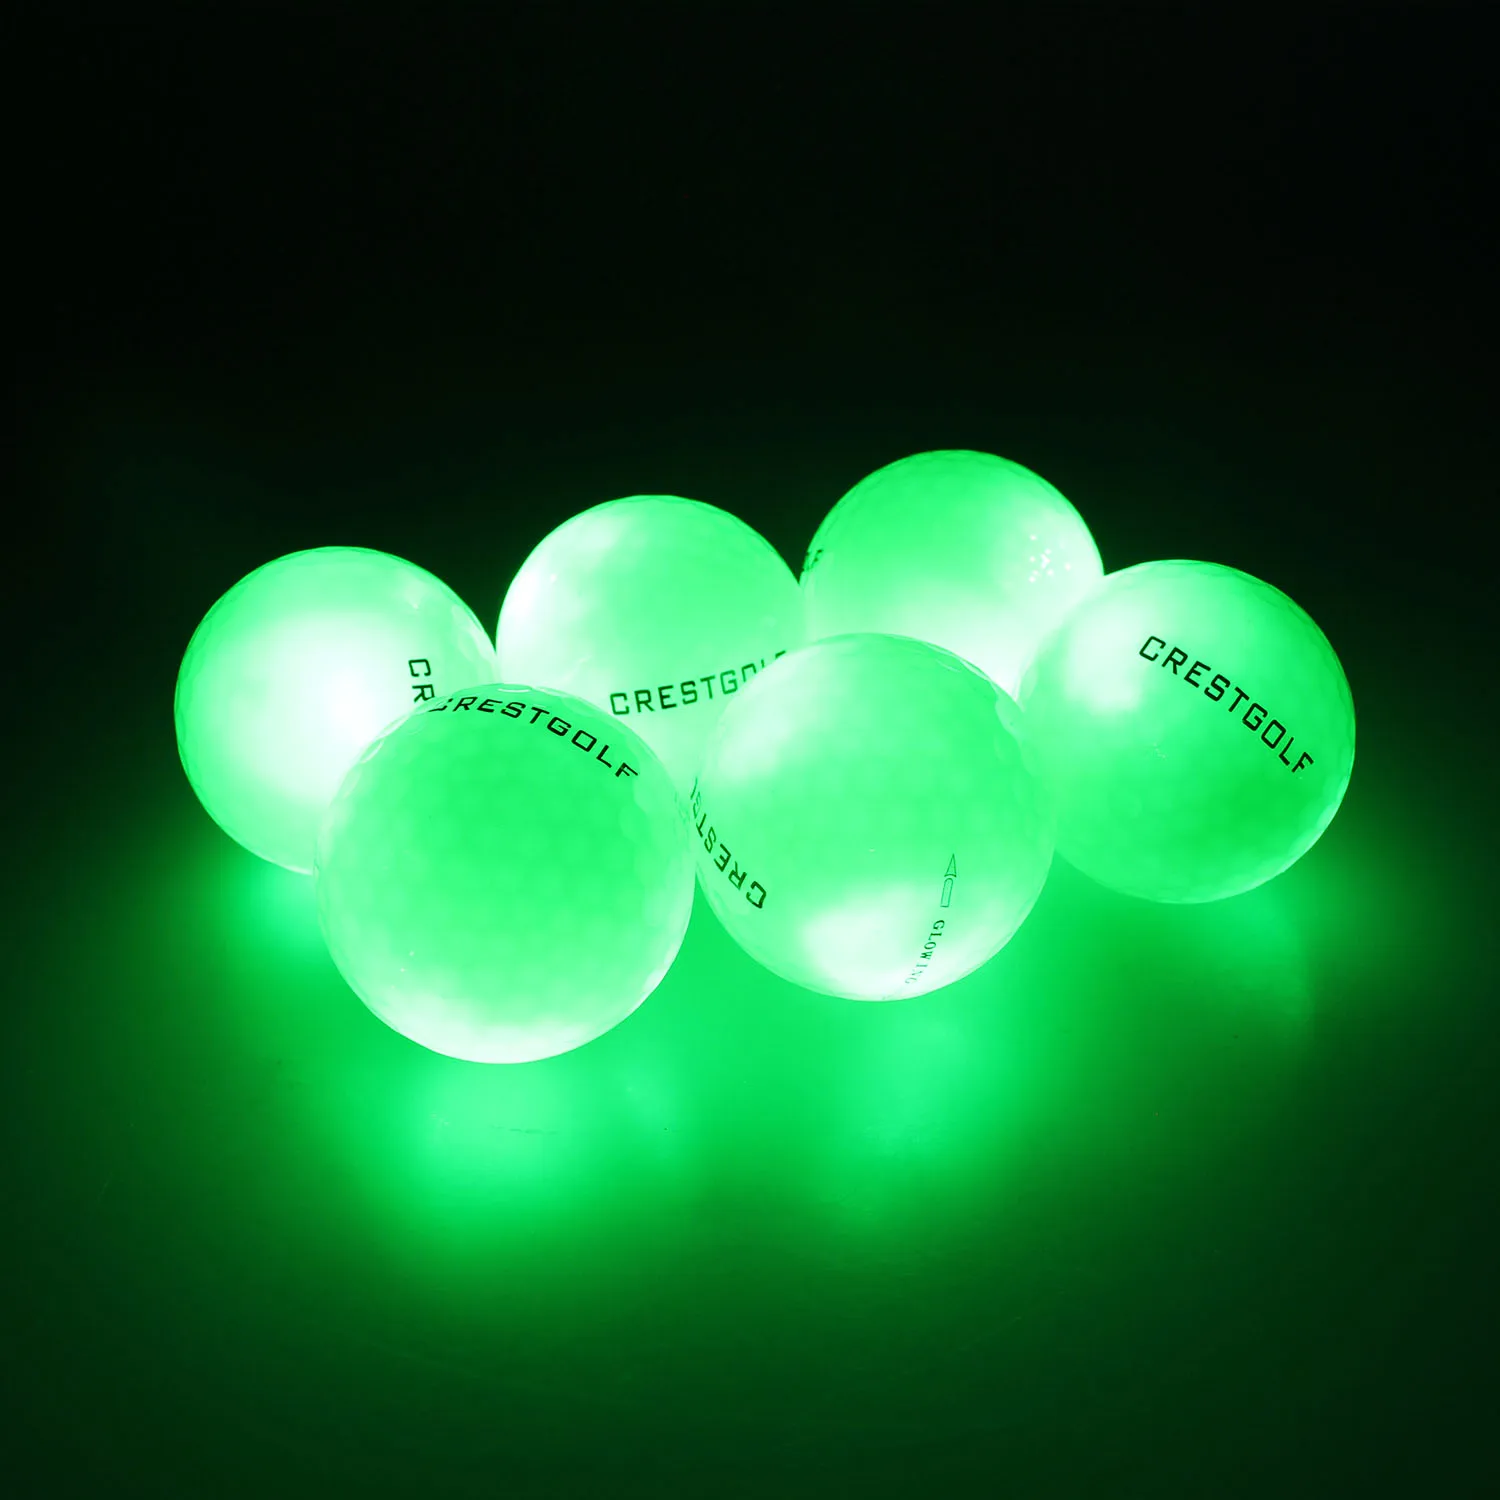 10 шт. в упаковке) Crest golf мигающий светящийся мяч для гольфа, ночной светящийся мигающий светильник 8 светодиодный мячик для гольфа, шесть цветов на ваш выбор